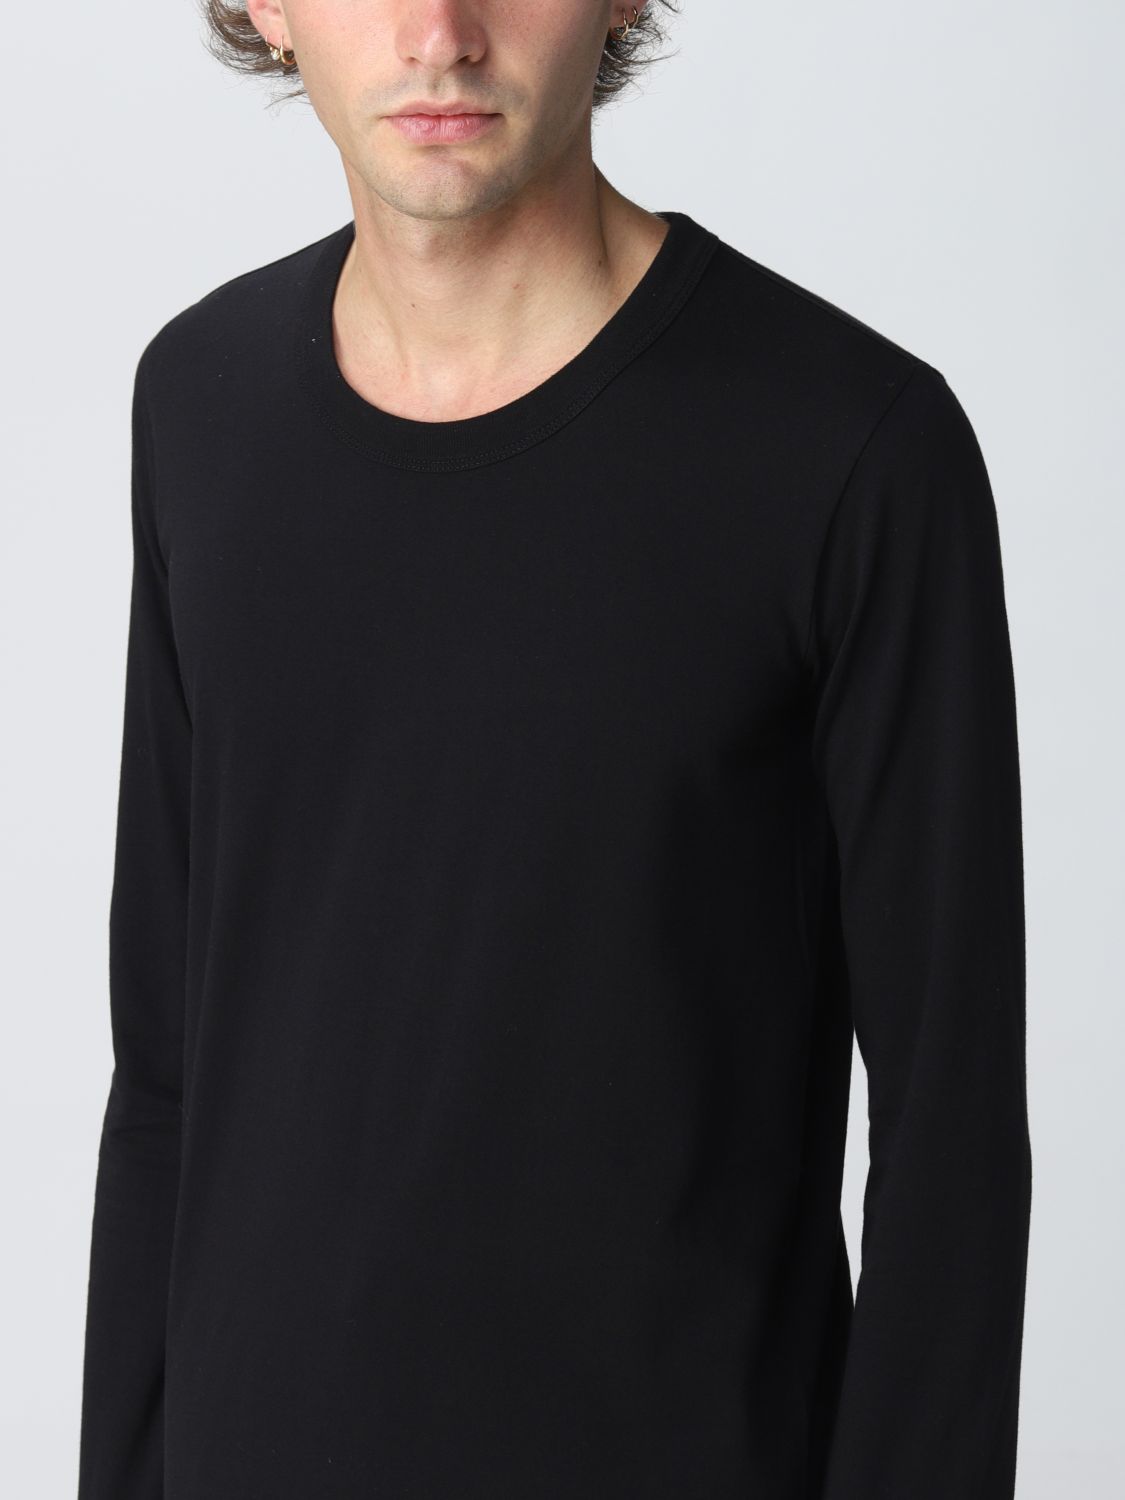 Tシャツ Rick Owens: Tシャツ メンズ Rick Owens ブラック 4